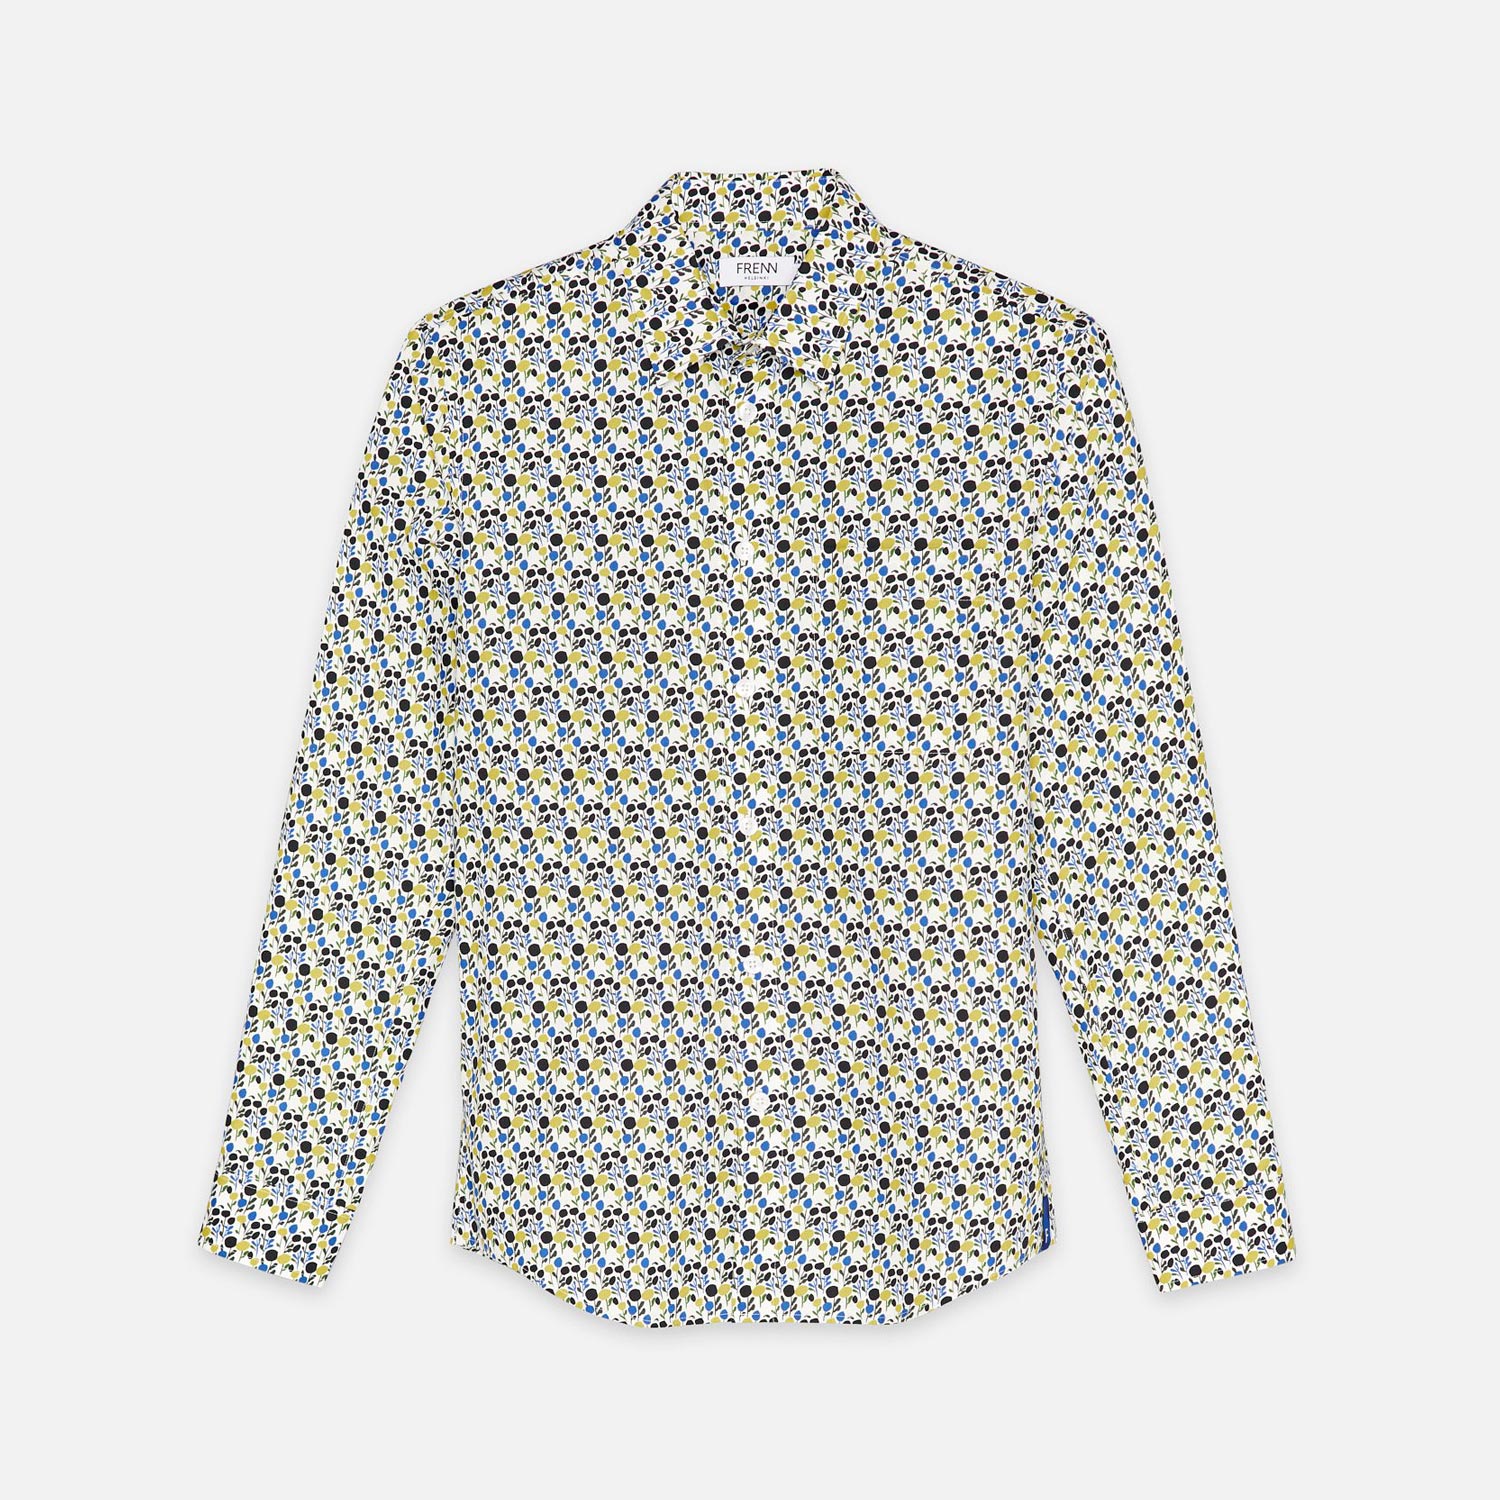  AAPO cotton shirt / FRENN. Image: Frenn 